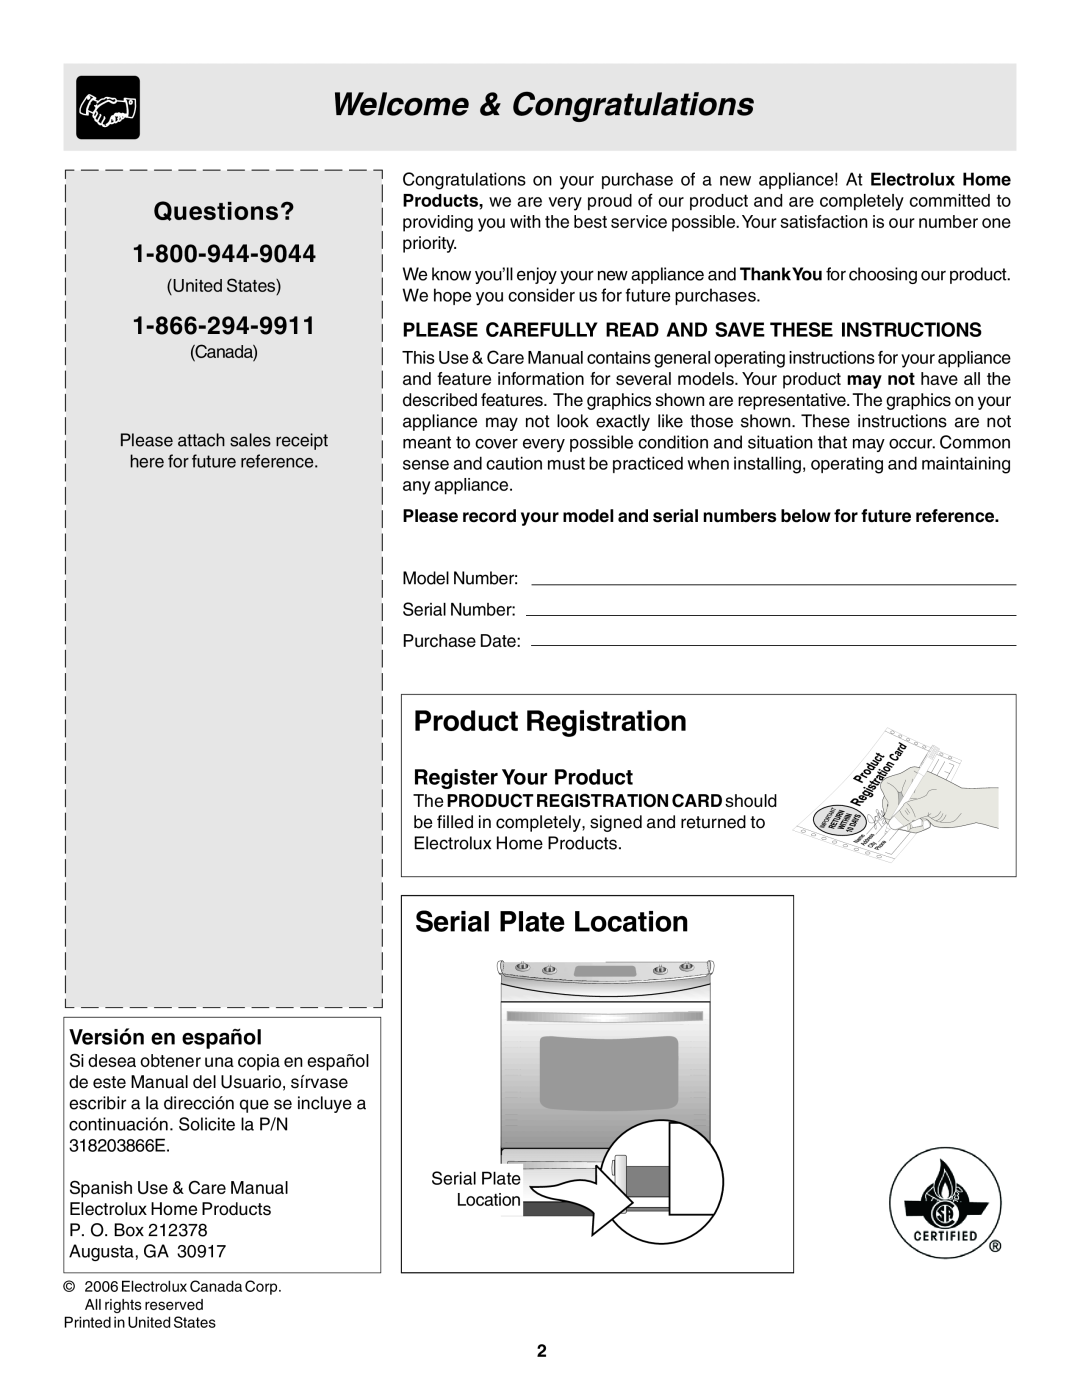 Frigidaire 318203866 warranty Welcome & Congratulations, Product Registration, Serial Plate Location, Versión en español 